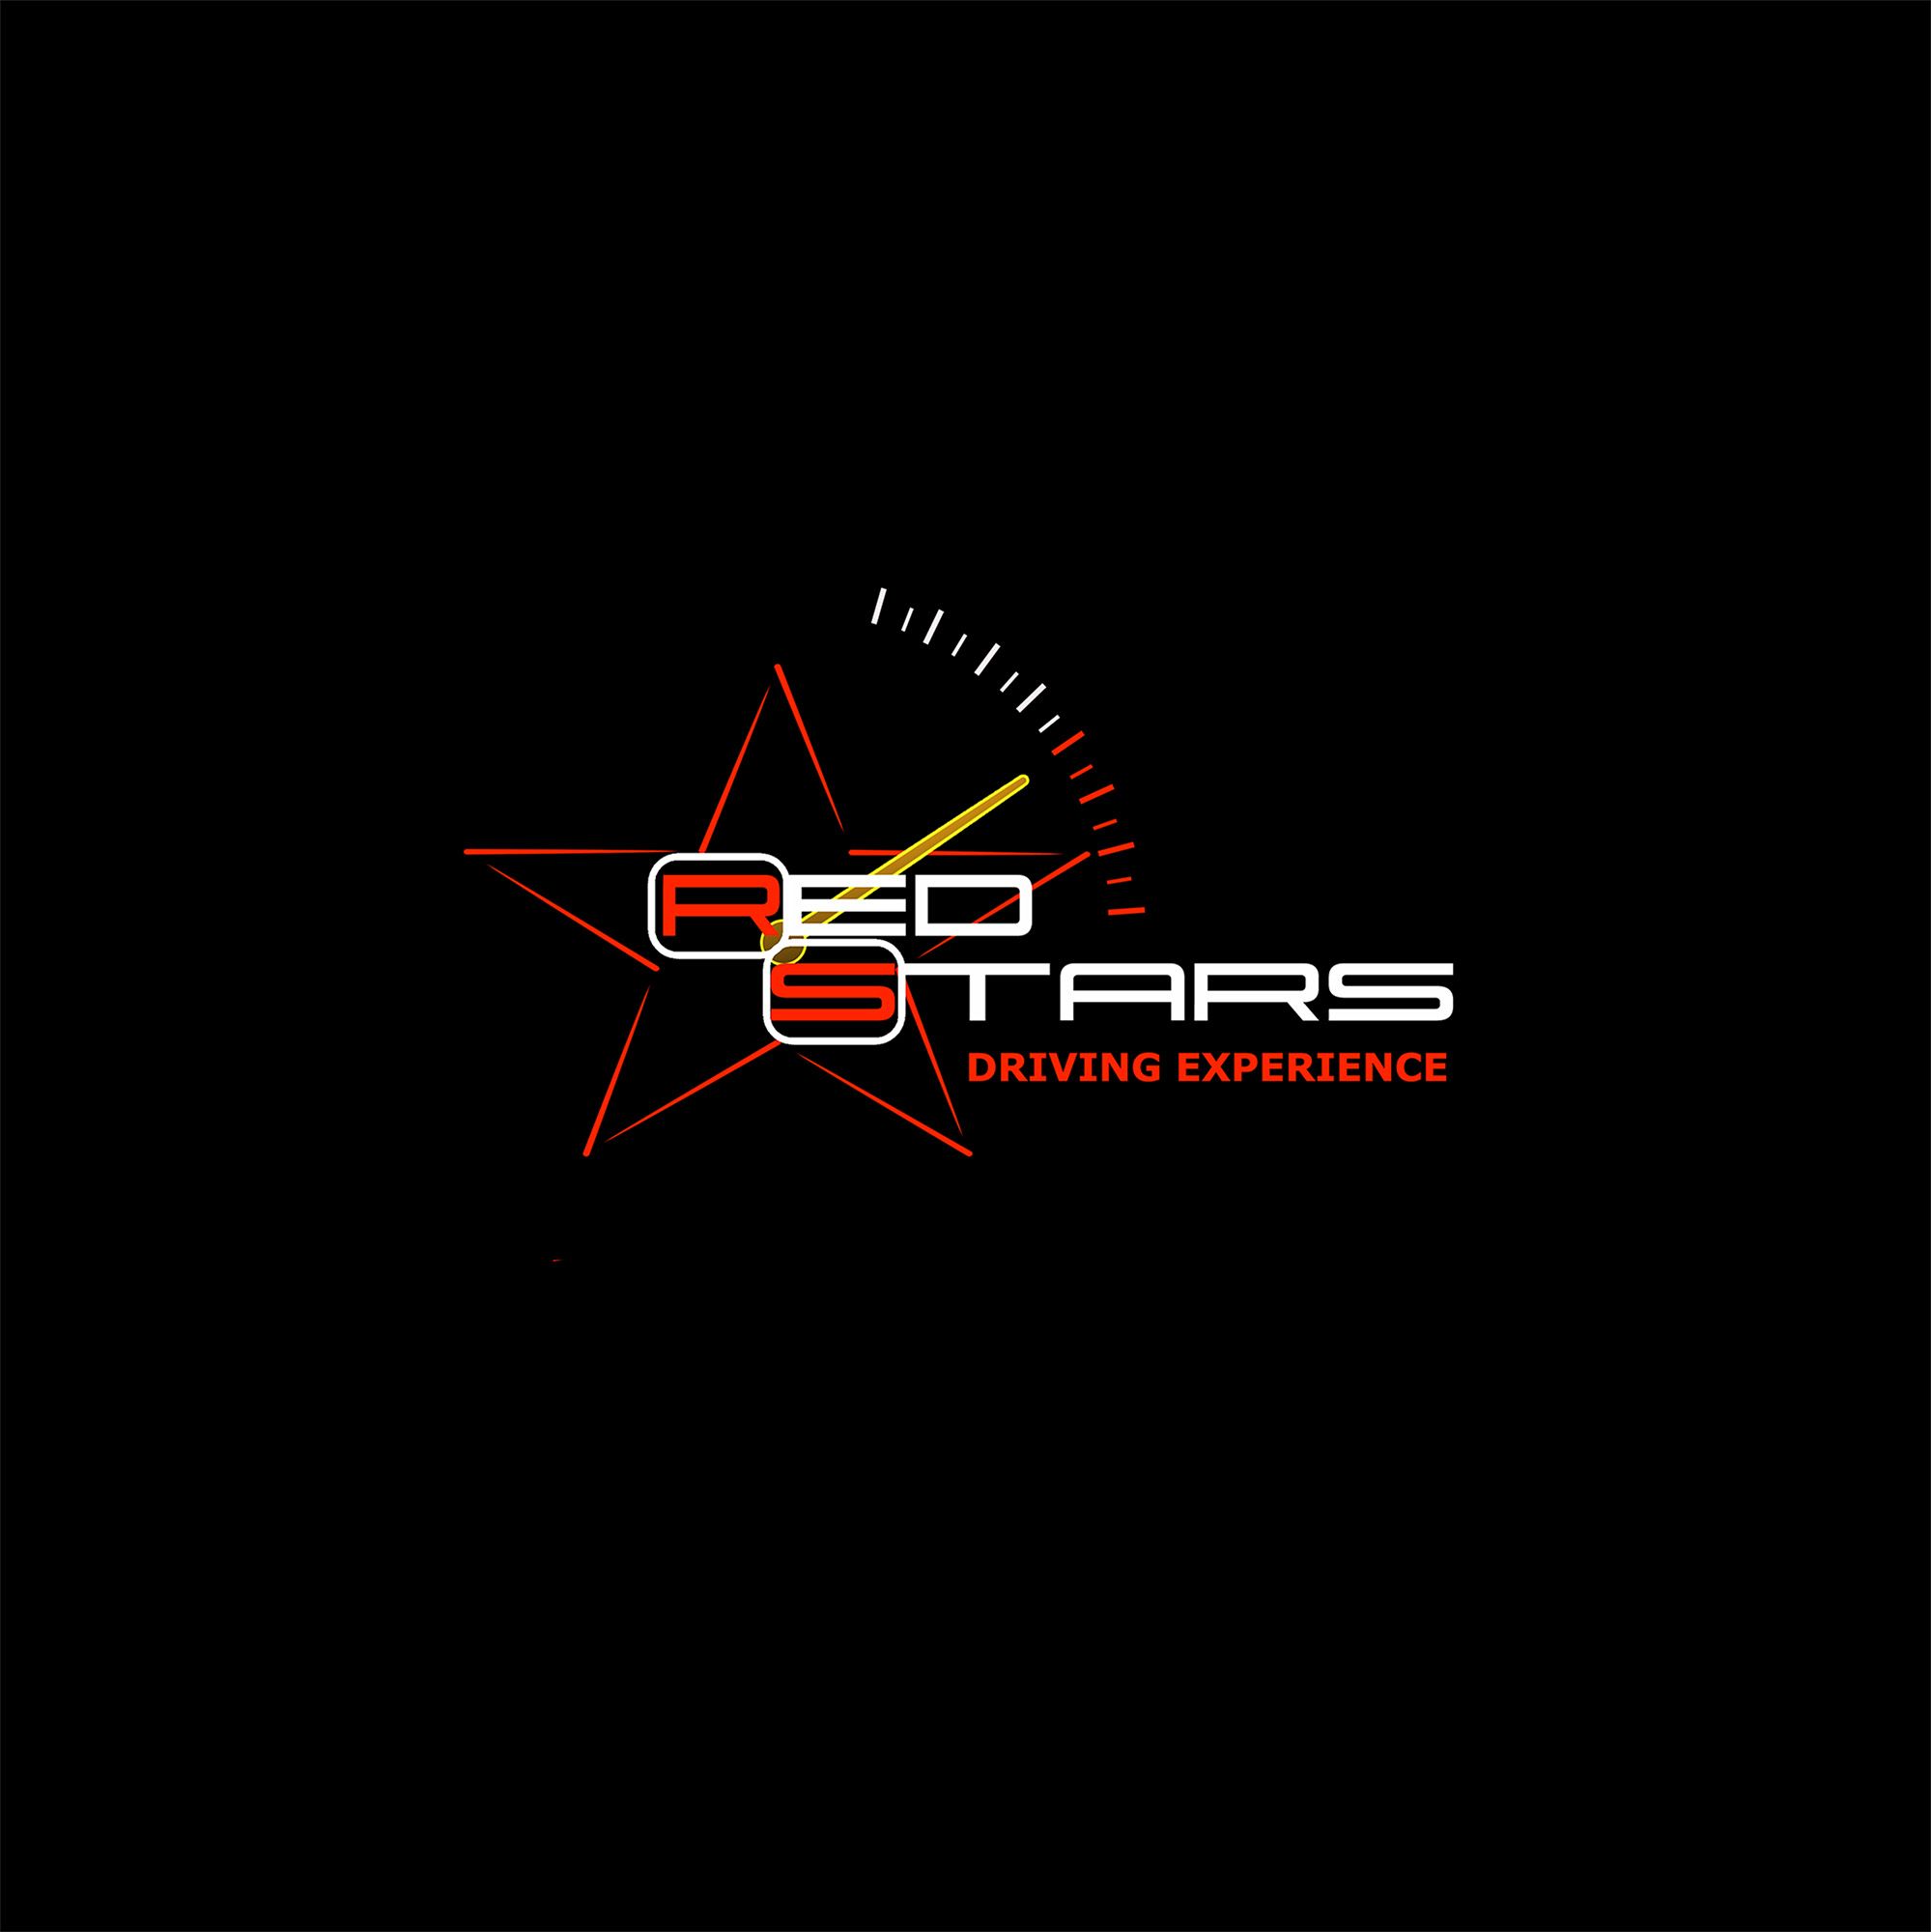 Логотип для компании (автоспорт) - дизайнер demo1ution